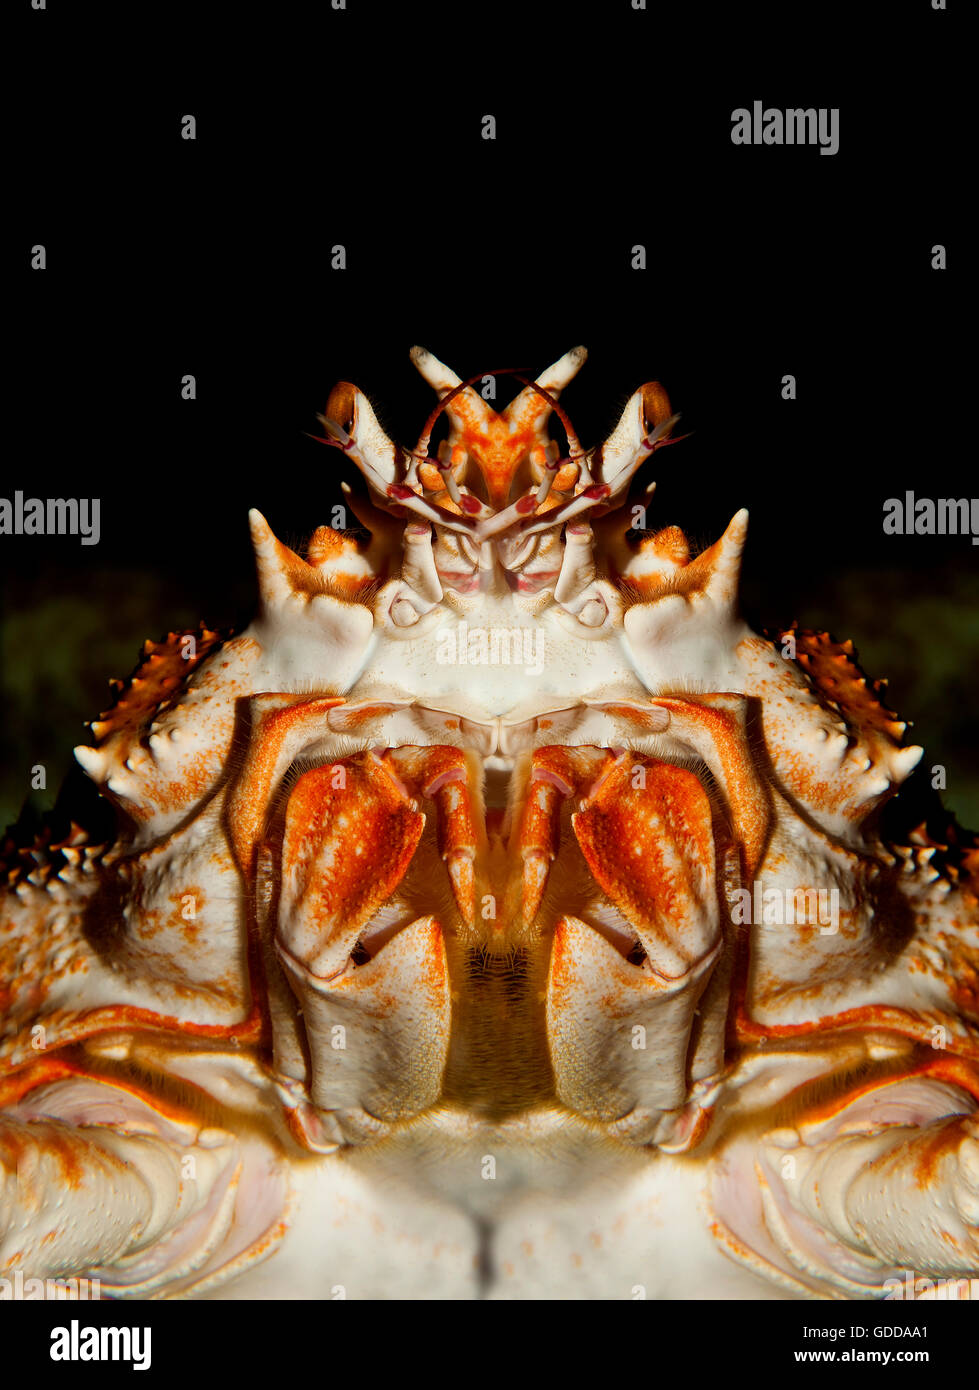 Araignée de mer japonais ou crabe araignée géante, macrocheira kaempferi, Adulte, Close-up de tête, dessous Vue Banque D'Images